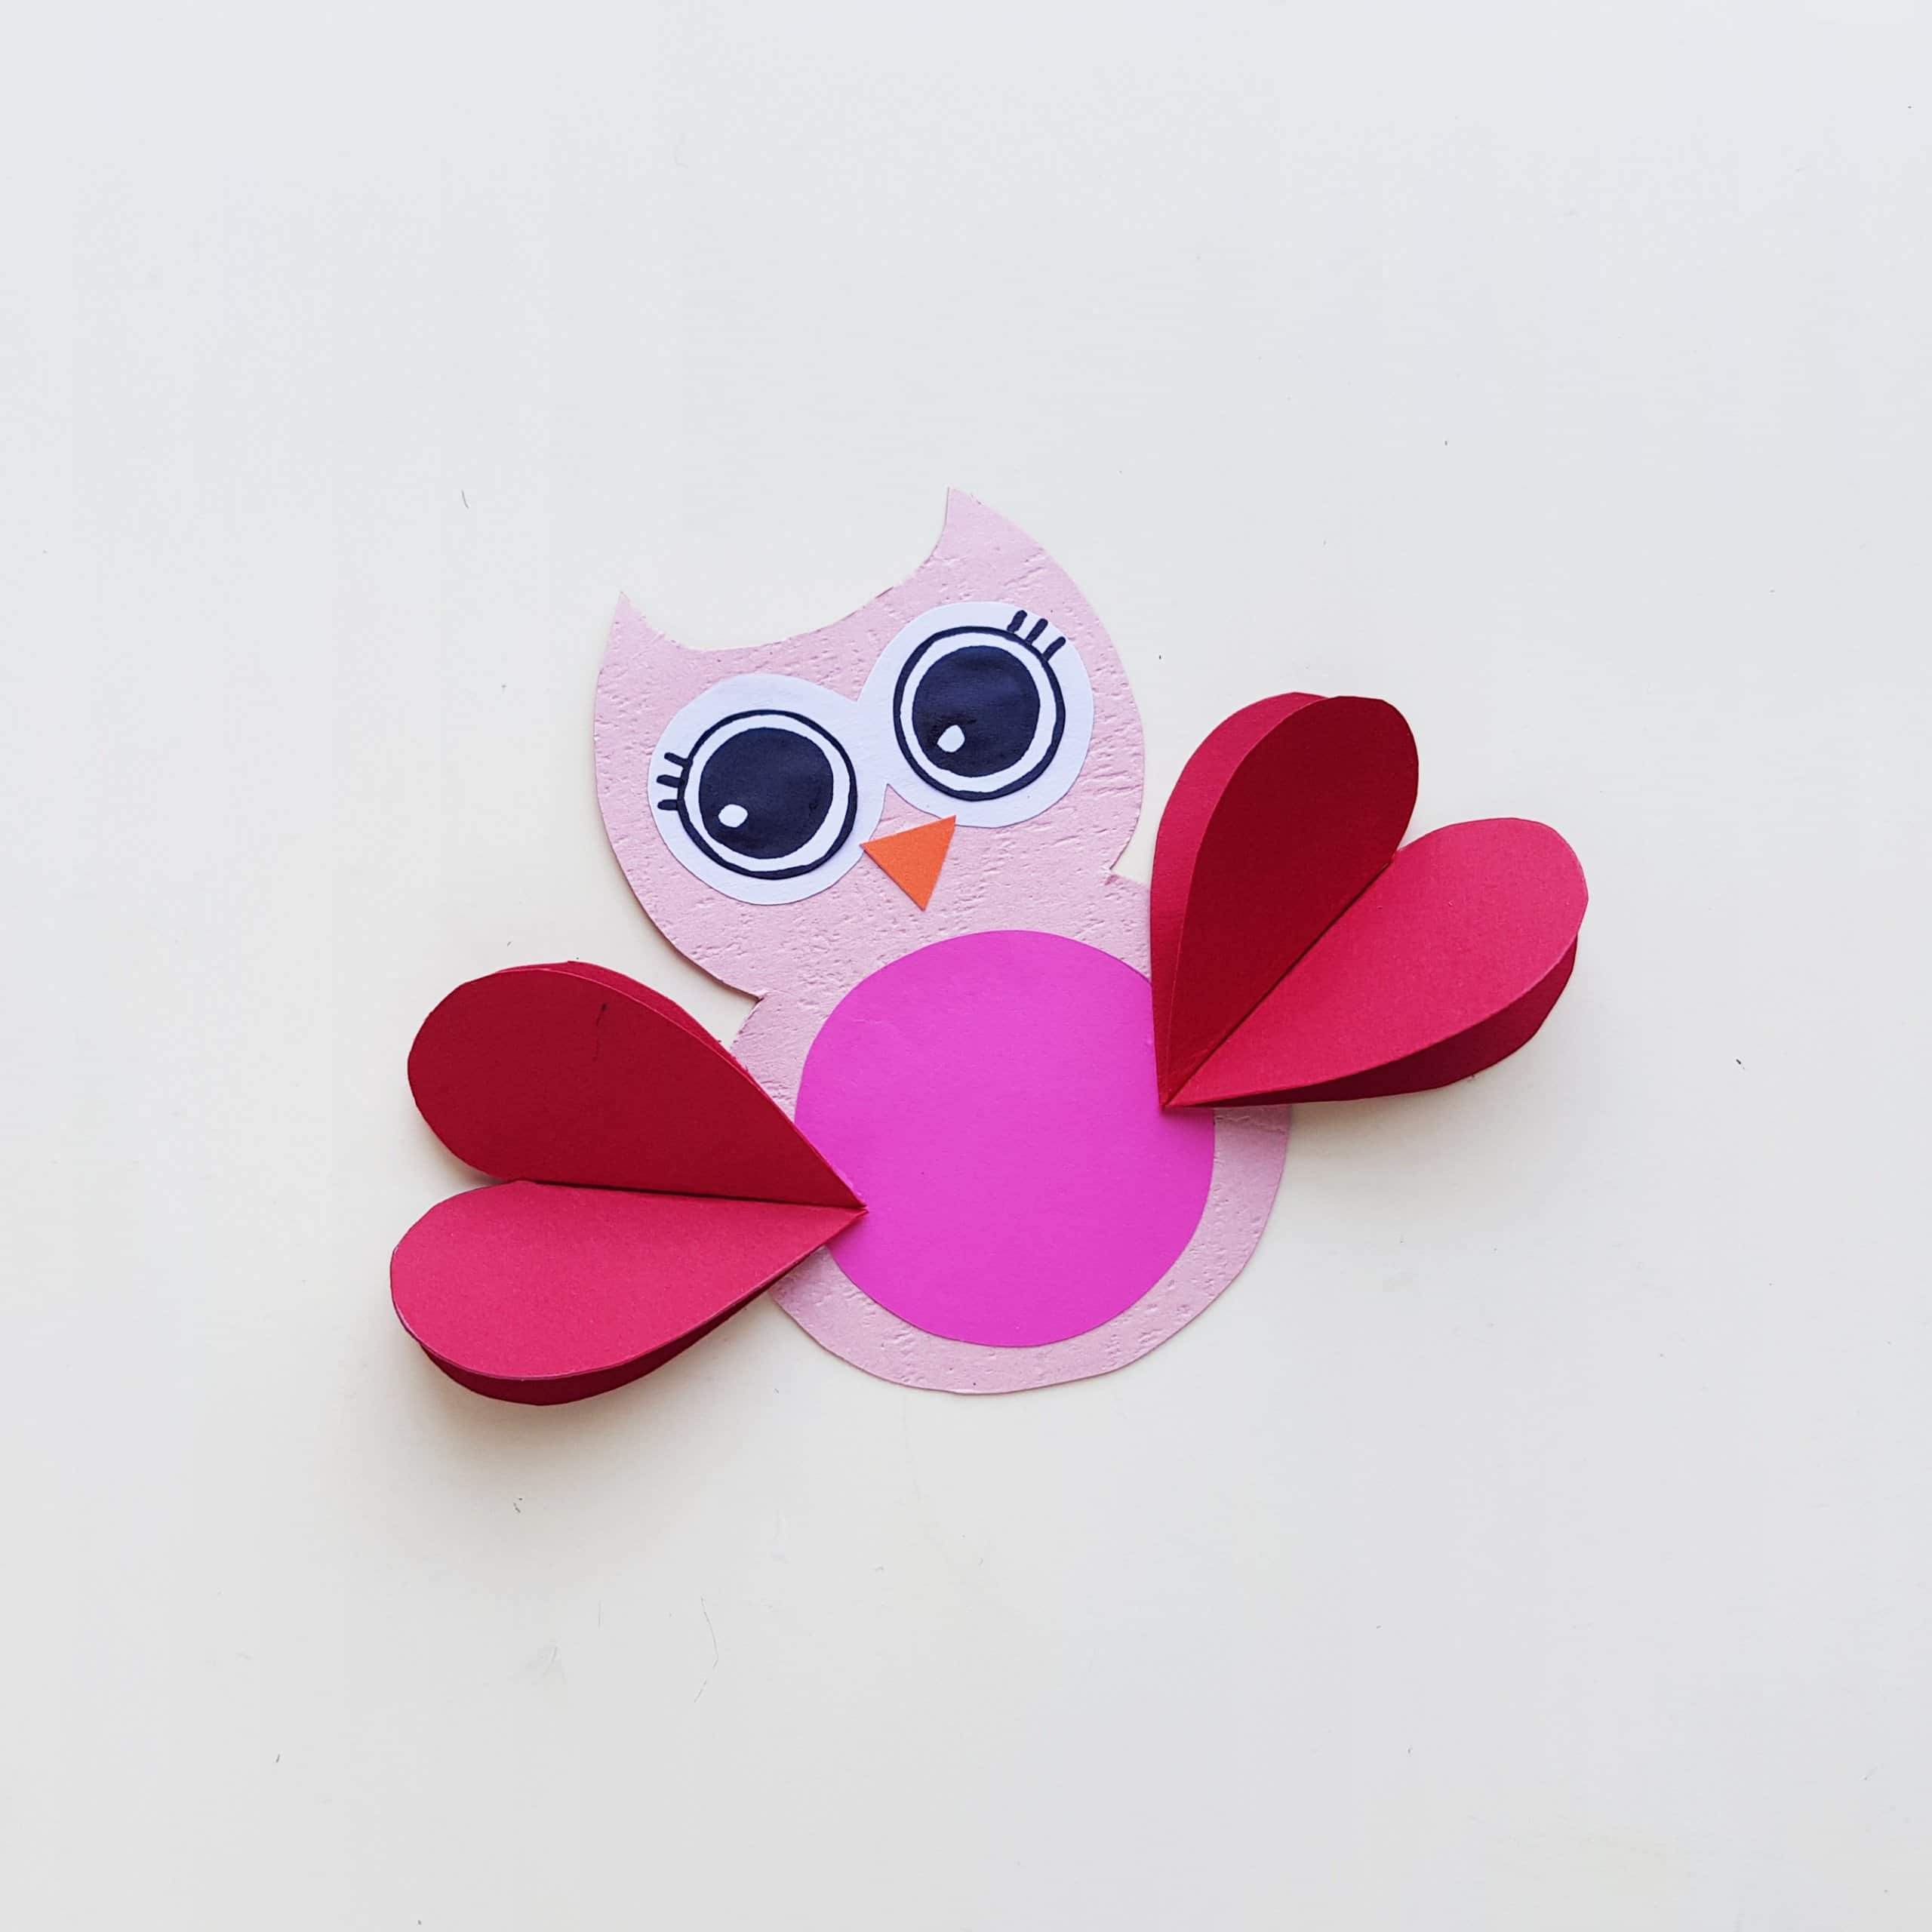 Printable Owl Craft